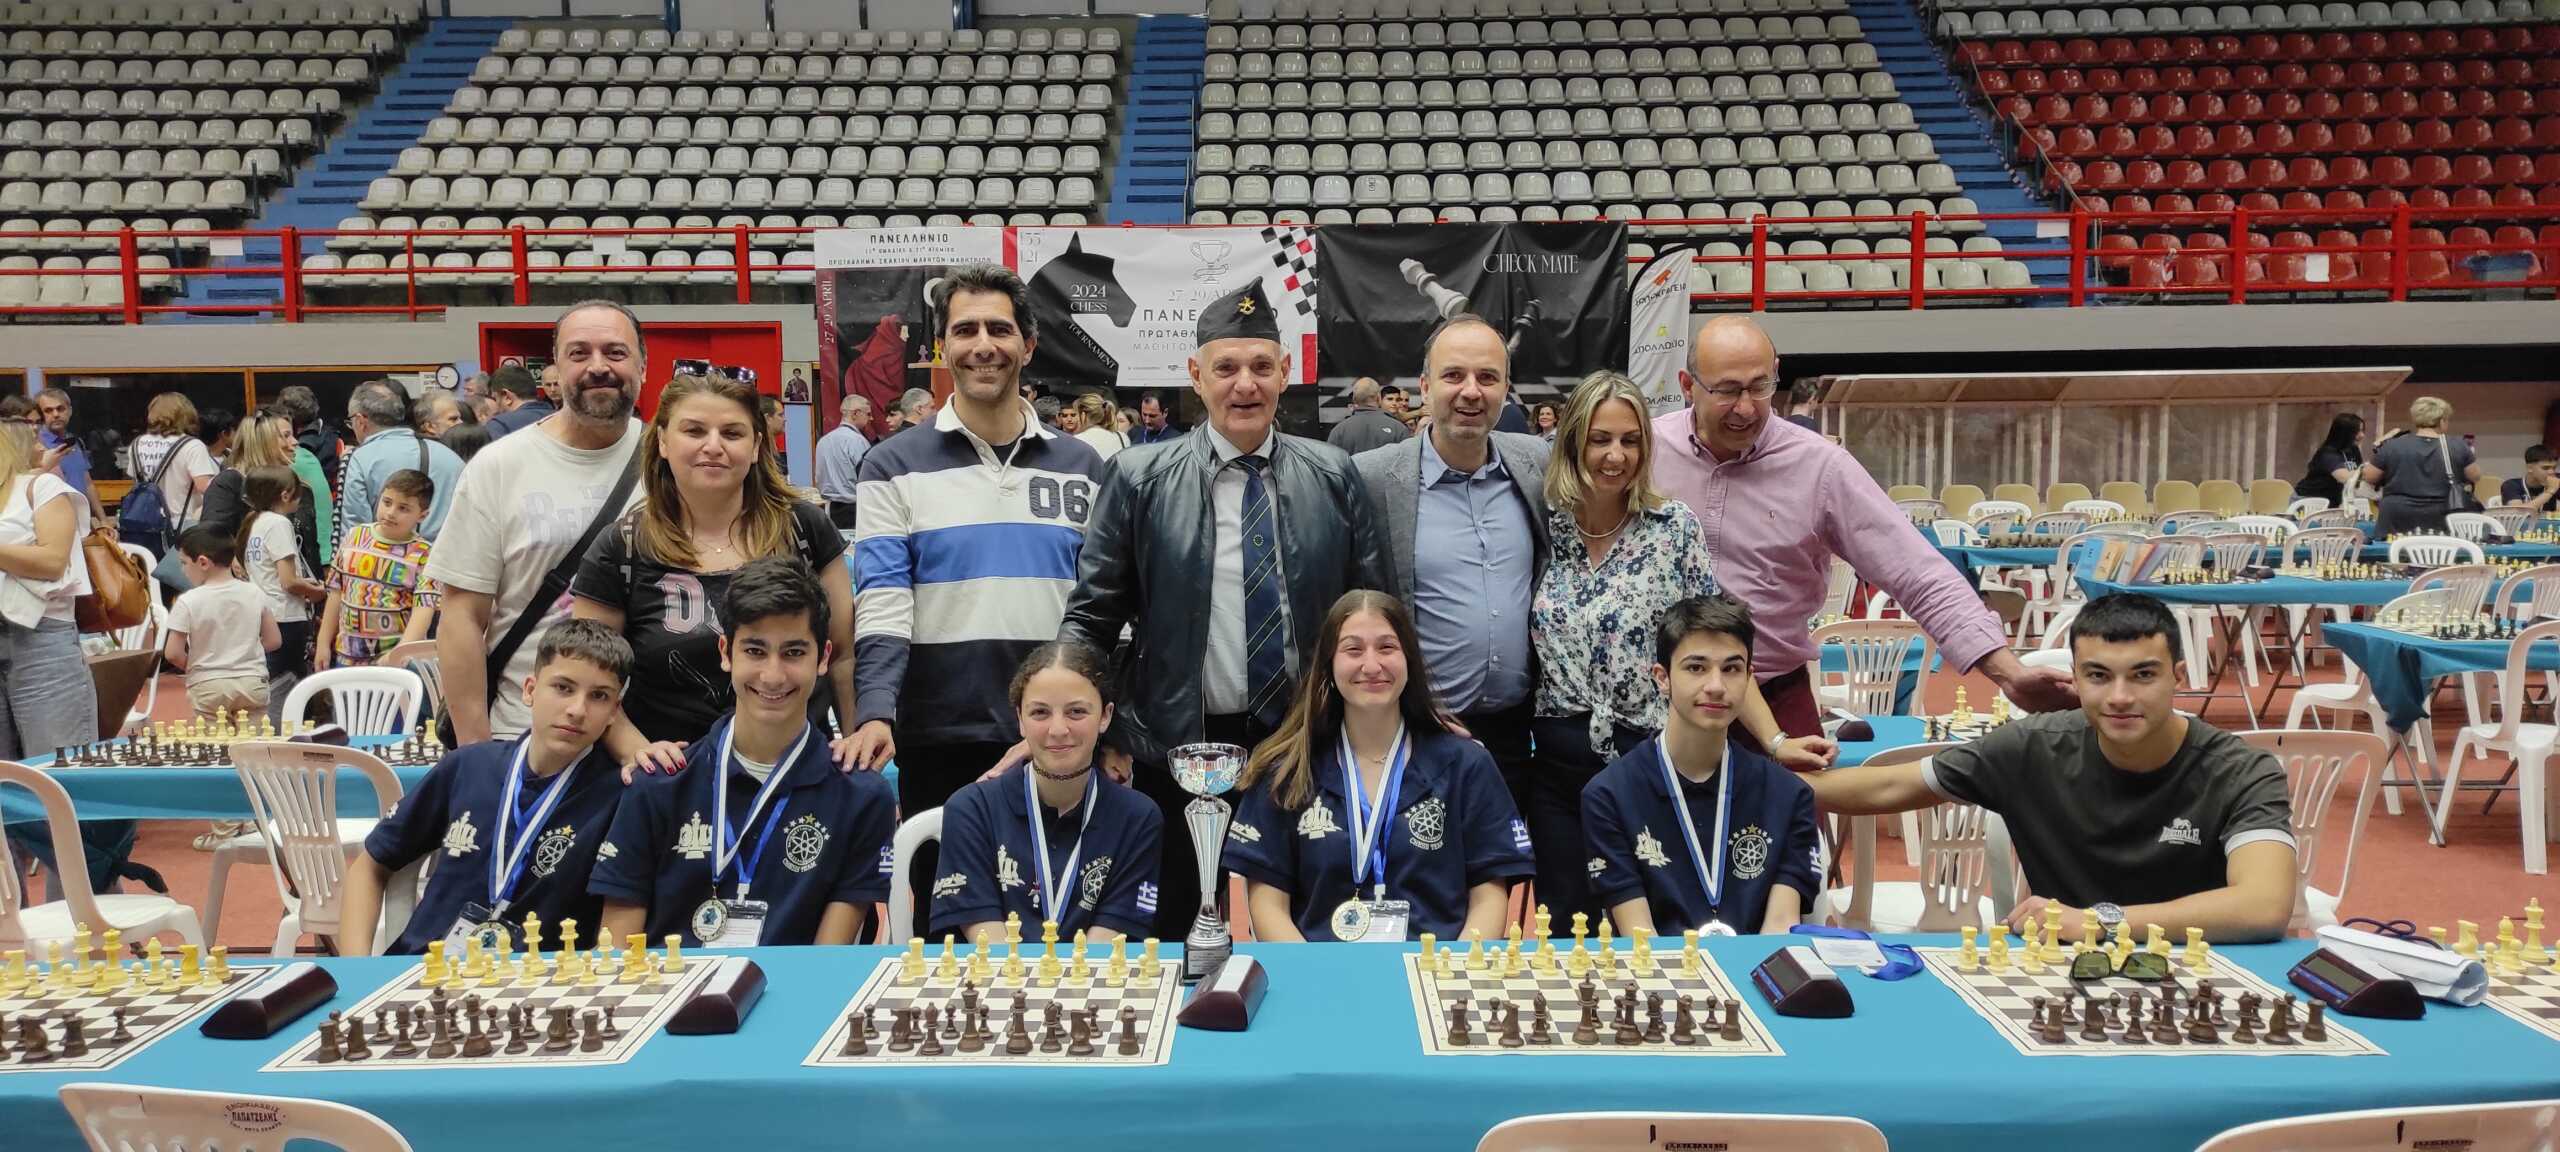 Θεσσαλονίκη: Πρωταθλητές στο σκάκι μαθητές Γυμνασίου από τη Θεσσαλονίκη